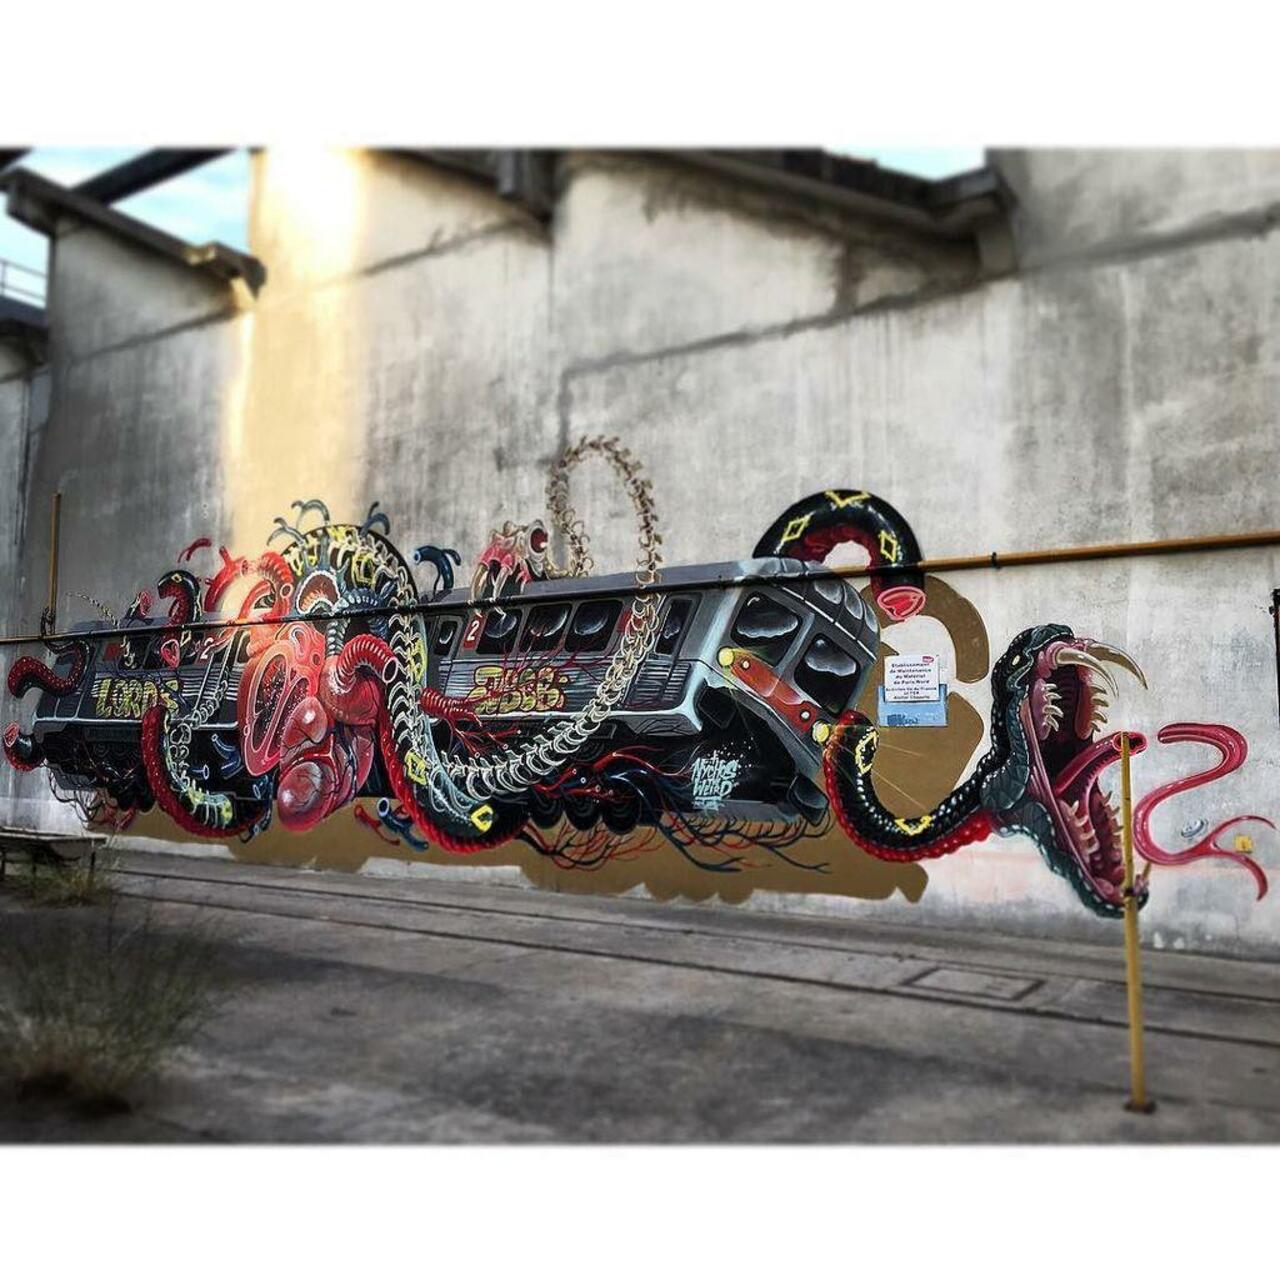 RT @ParisInstagram: Snake On Train By @nychos... #streetart #graffiti #wall #snake #skeleton #snakesonatrain #… http://ift.tt/1GcKMQp http://t.co/cY8kc7kl8M